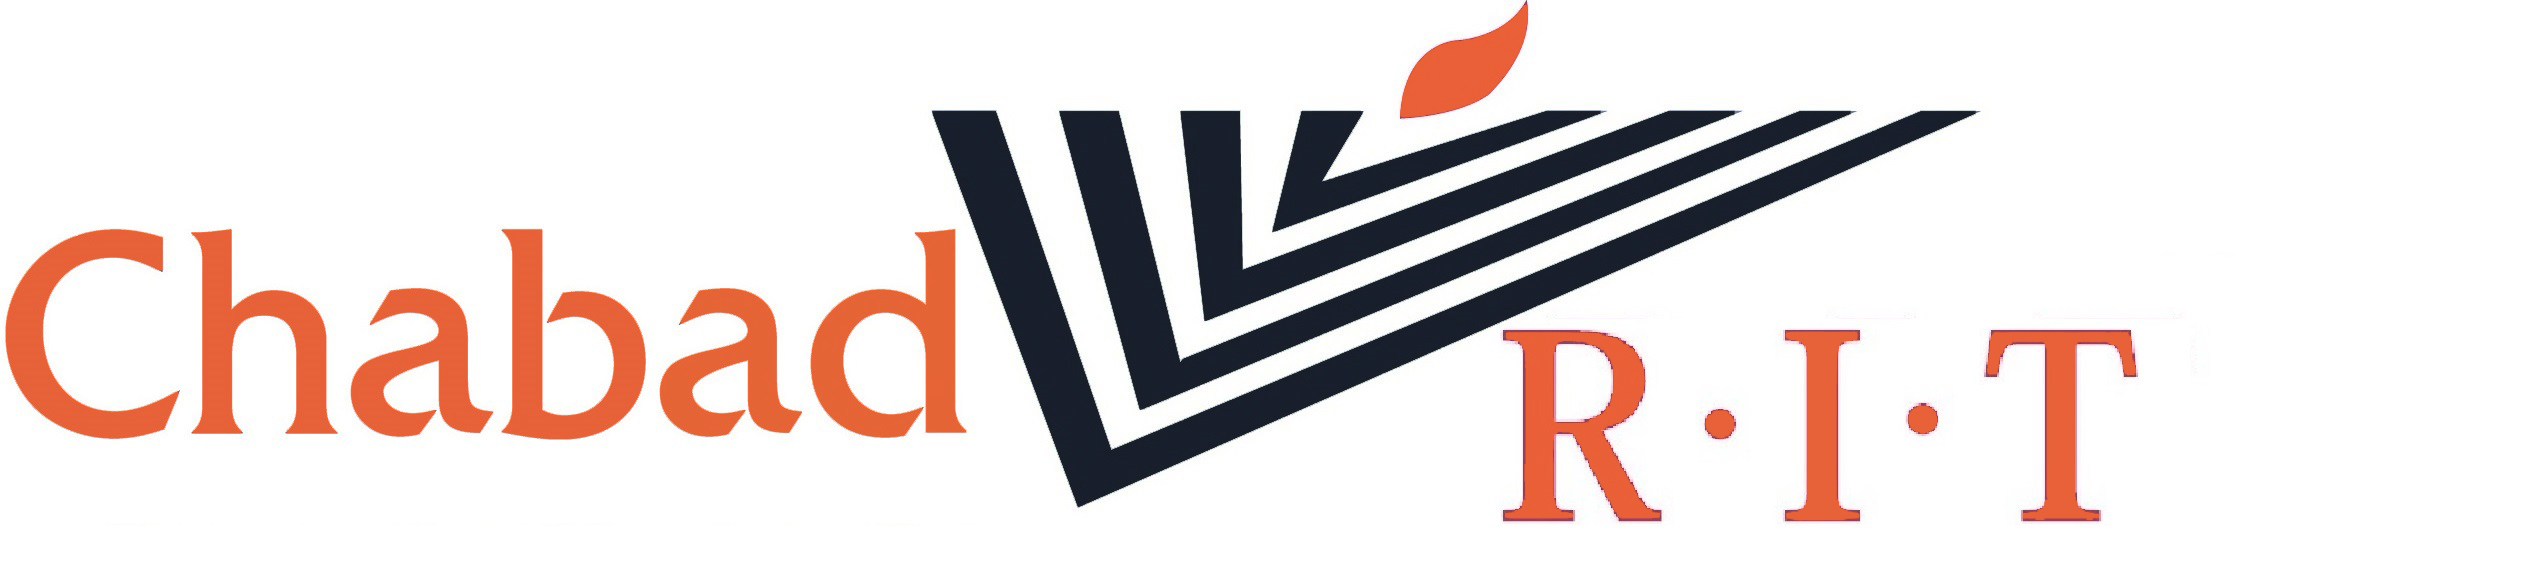 Chabad at RIT logo